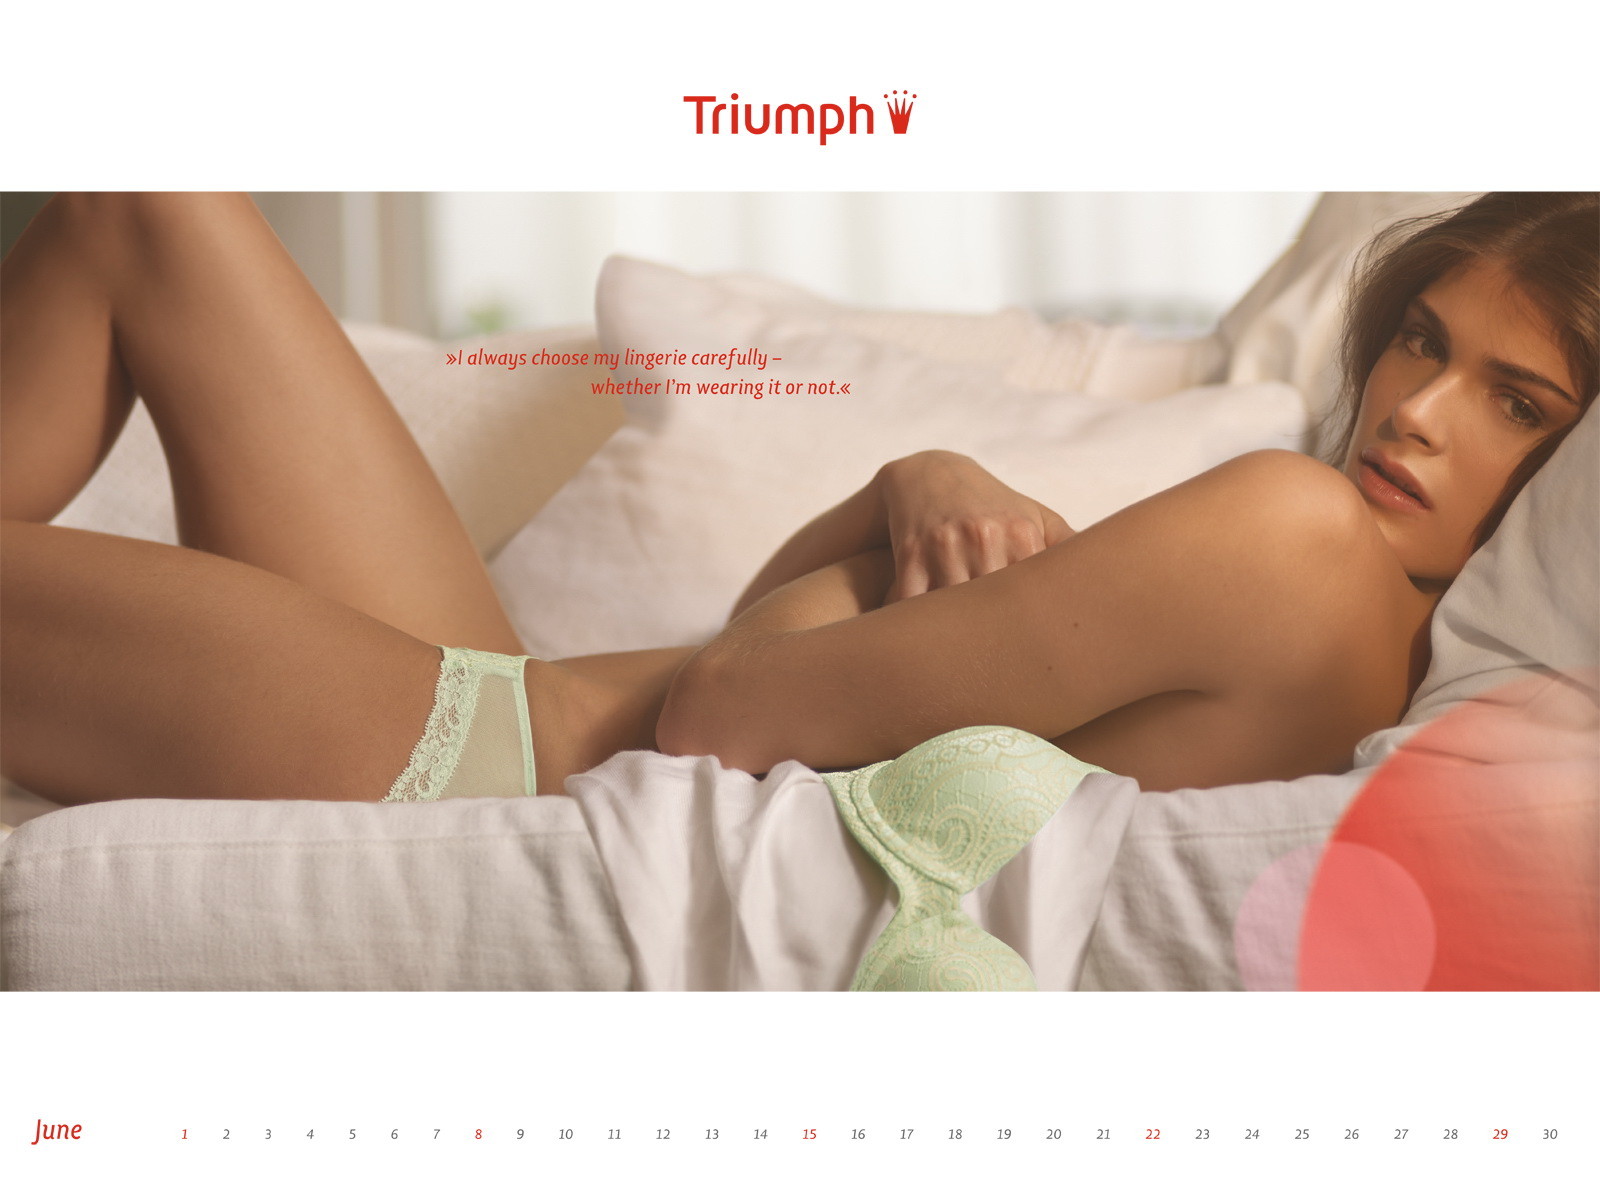 Elisa Sednaoui in very sexy Triumph 2012 lingerie calendar #75276966